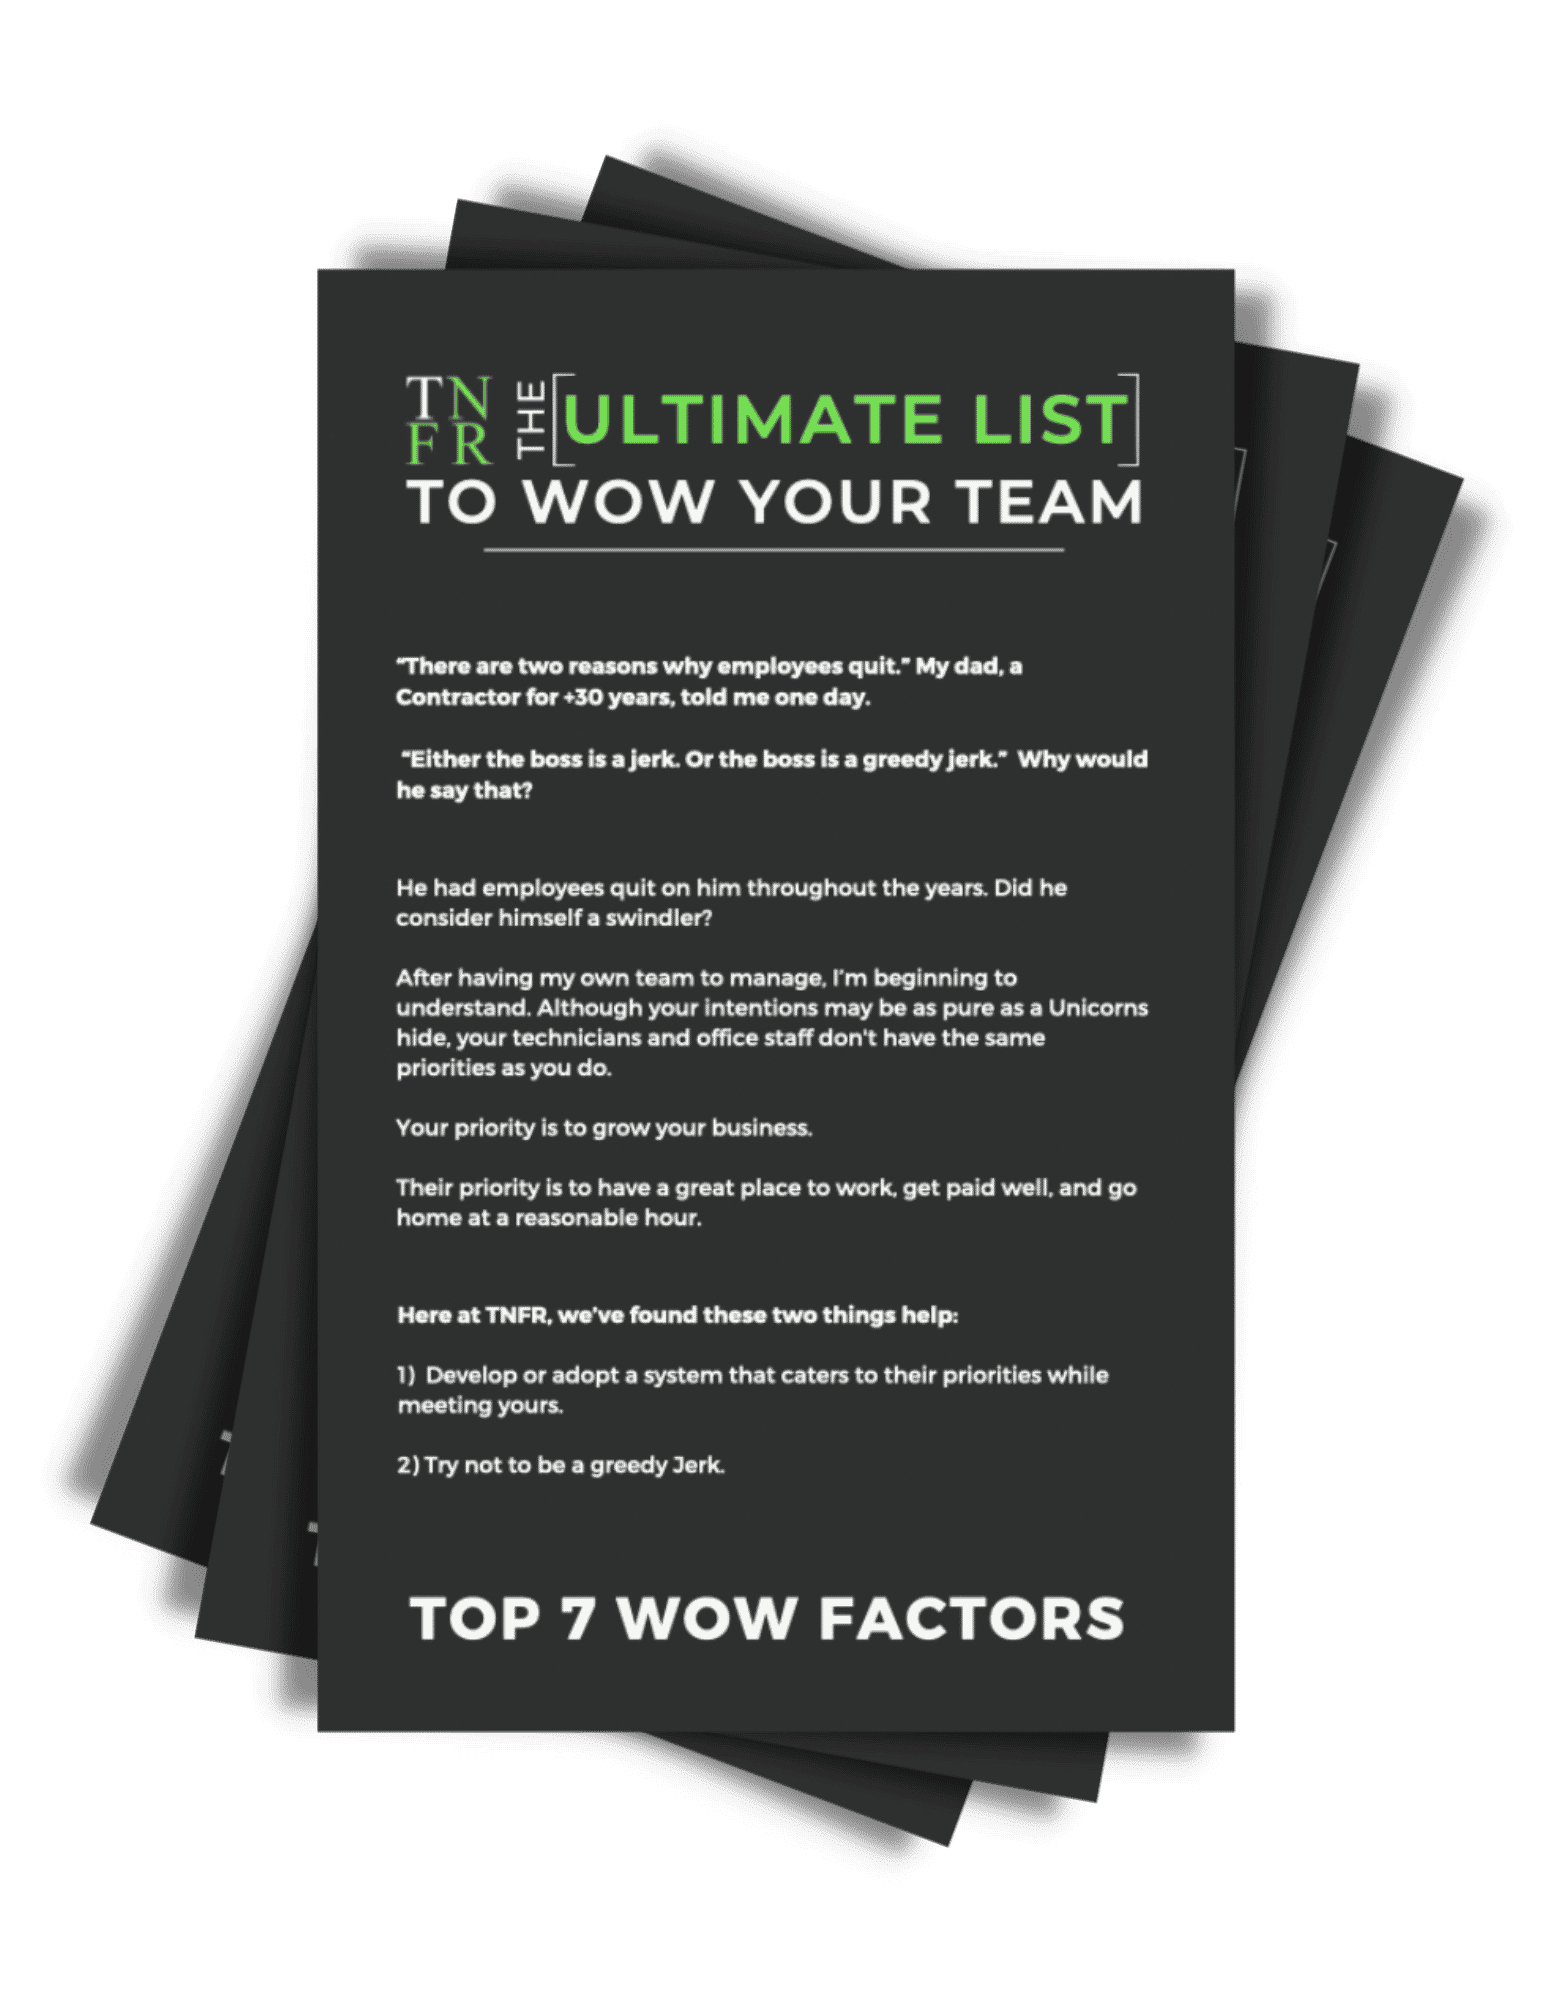 7 wow factors